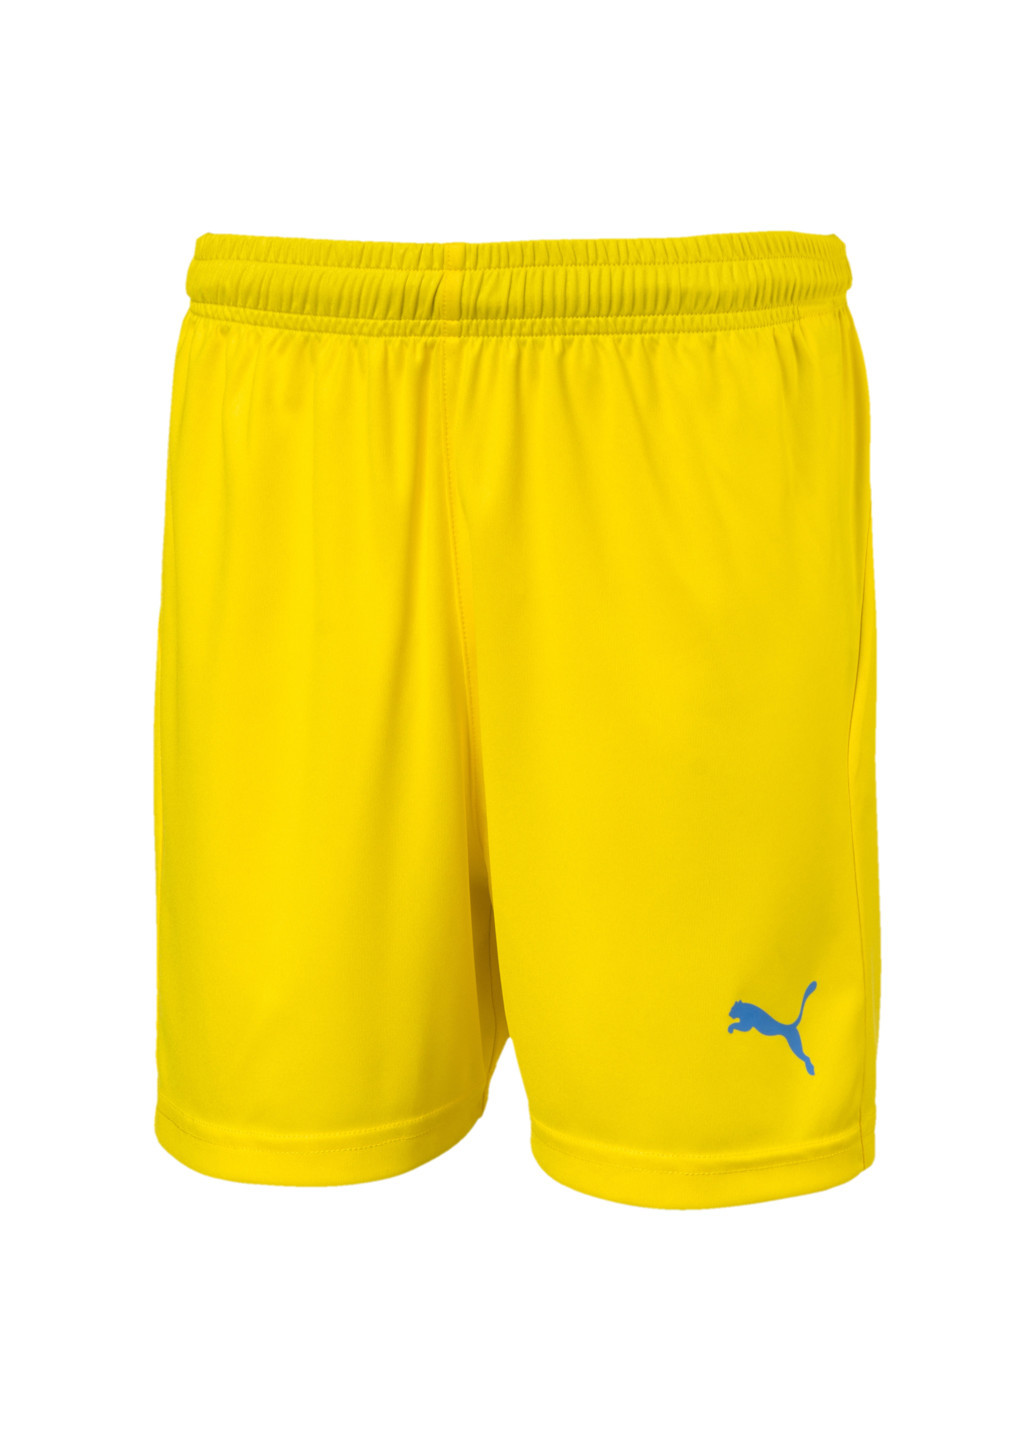 Шорты LIGA Kids’ Football Shorts Puma однотонные жёлтые спортивные полиэстер